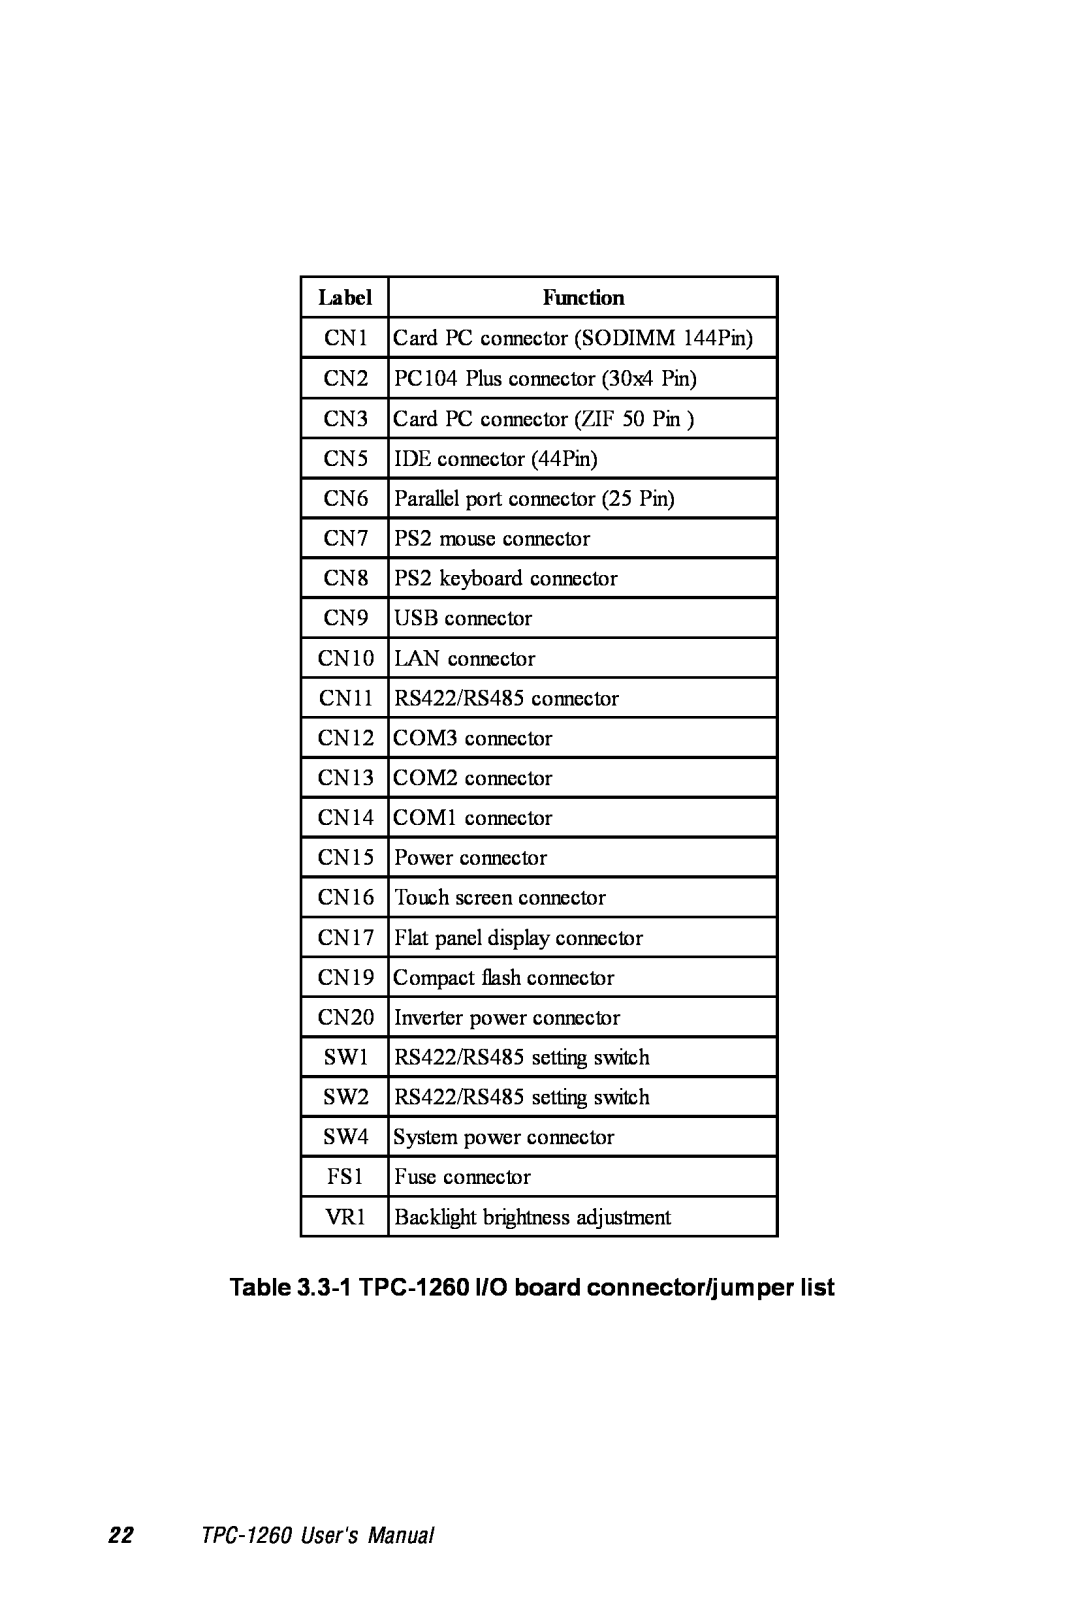 Advantech manual 3-1 TPC-1260 I/O board connector/jumper list, Label, Function, 2 2 TPC-1260 Users Manual 